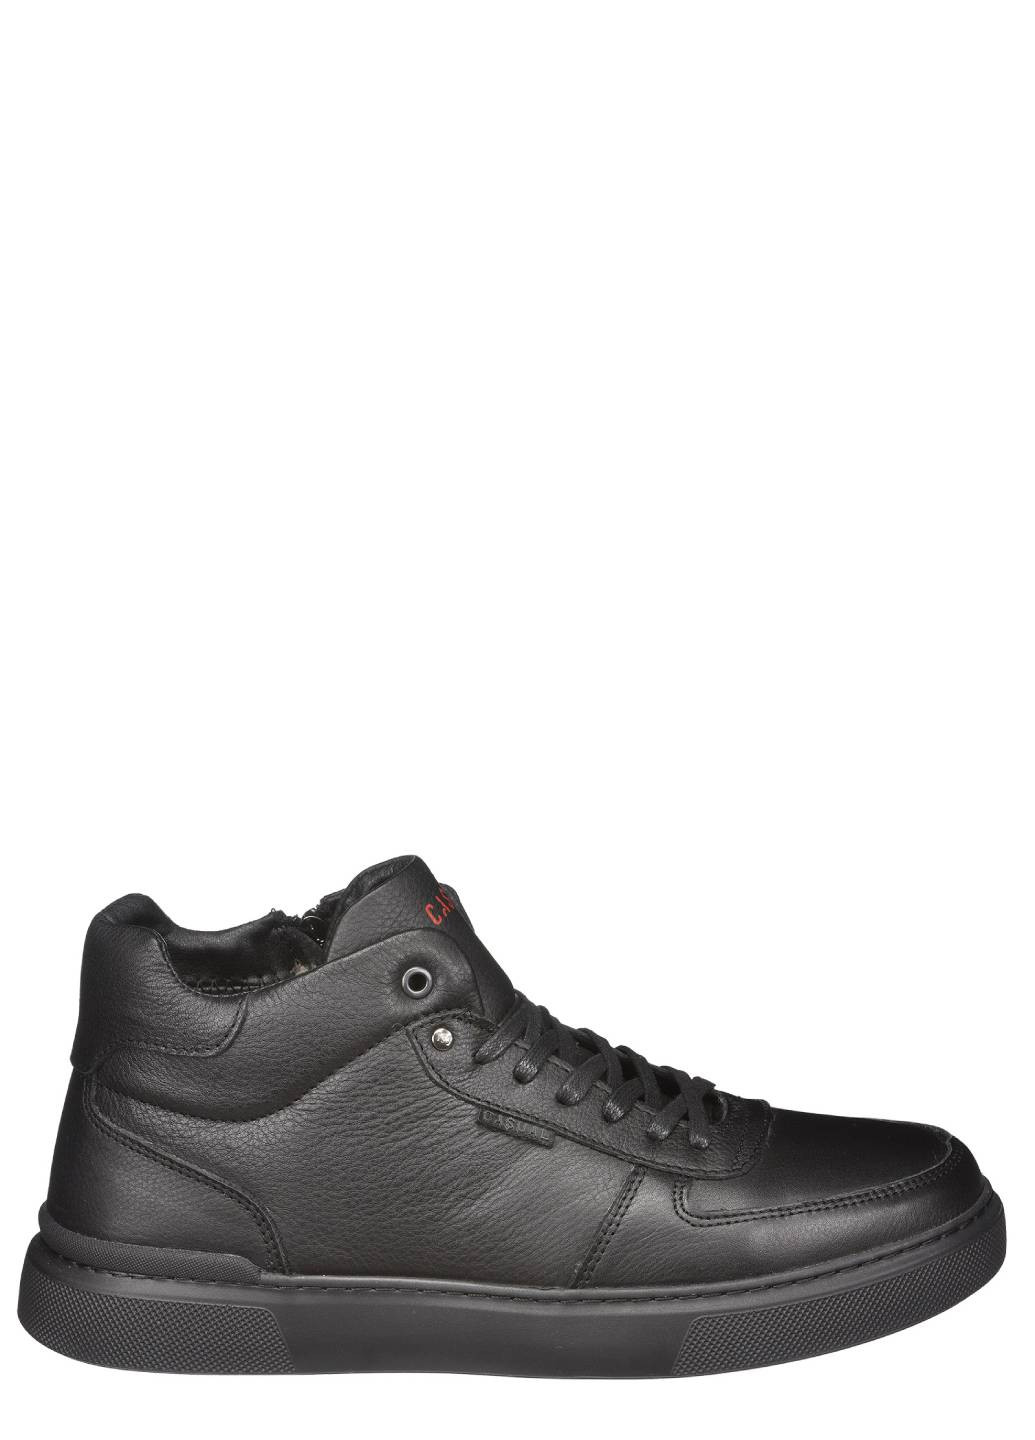 Черные зимние ботинки мужские утепленные Casual